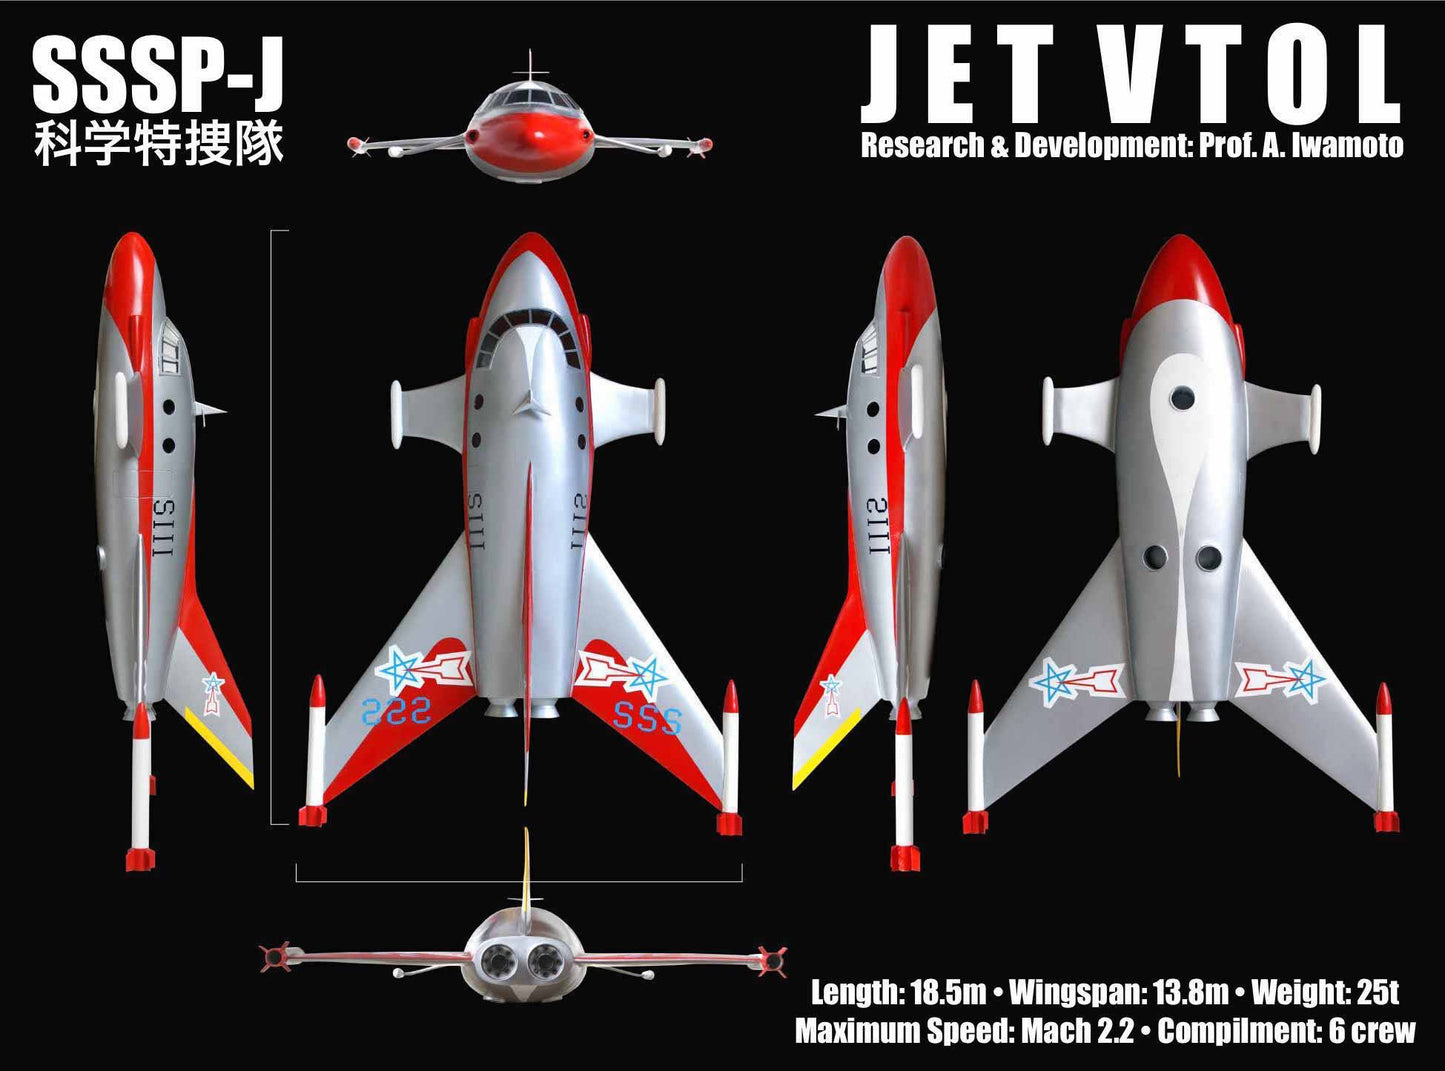 Ultraman Series: Jet Volt